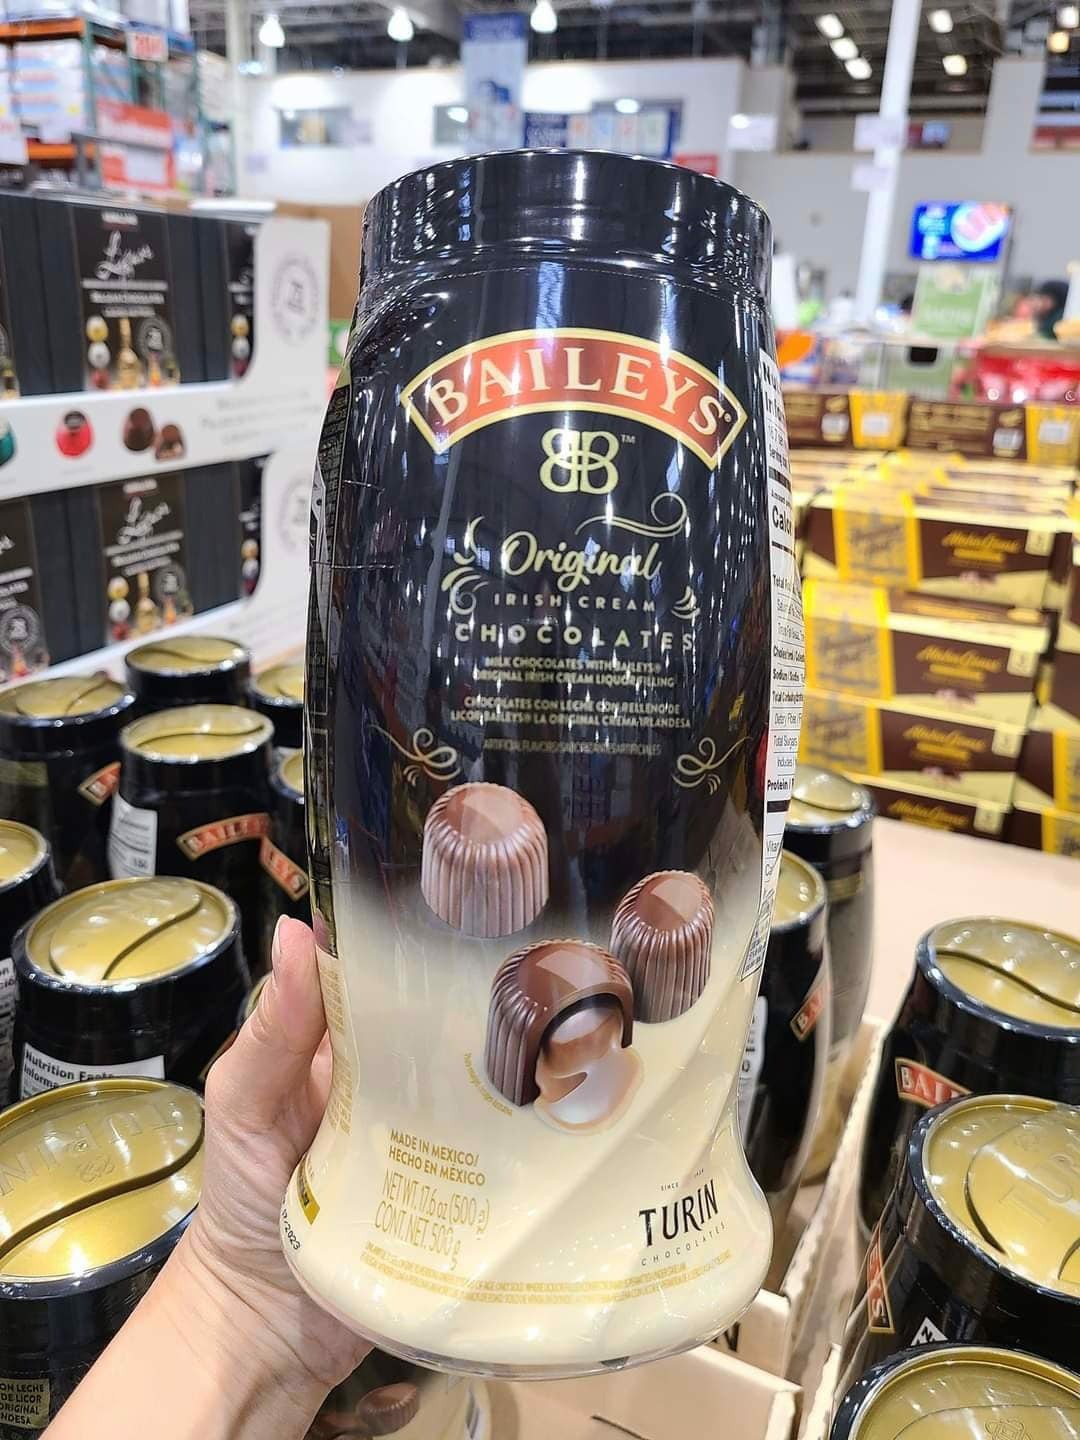 Socola nhân rượu Baileys Chocolates Turin 500g nhập khẩu Mỹ